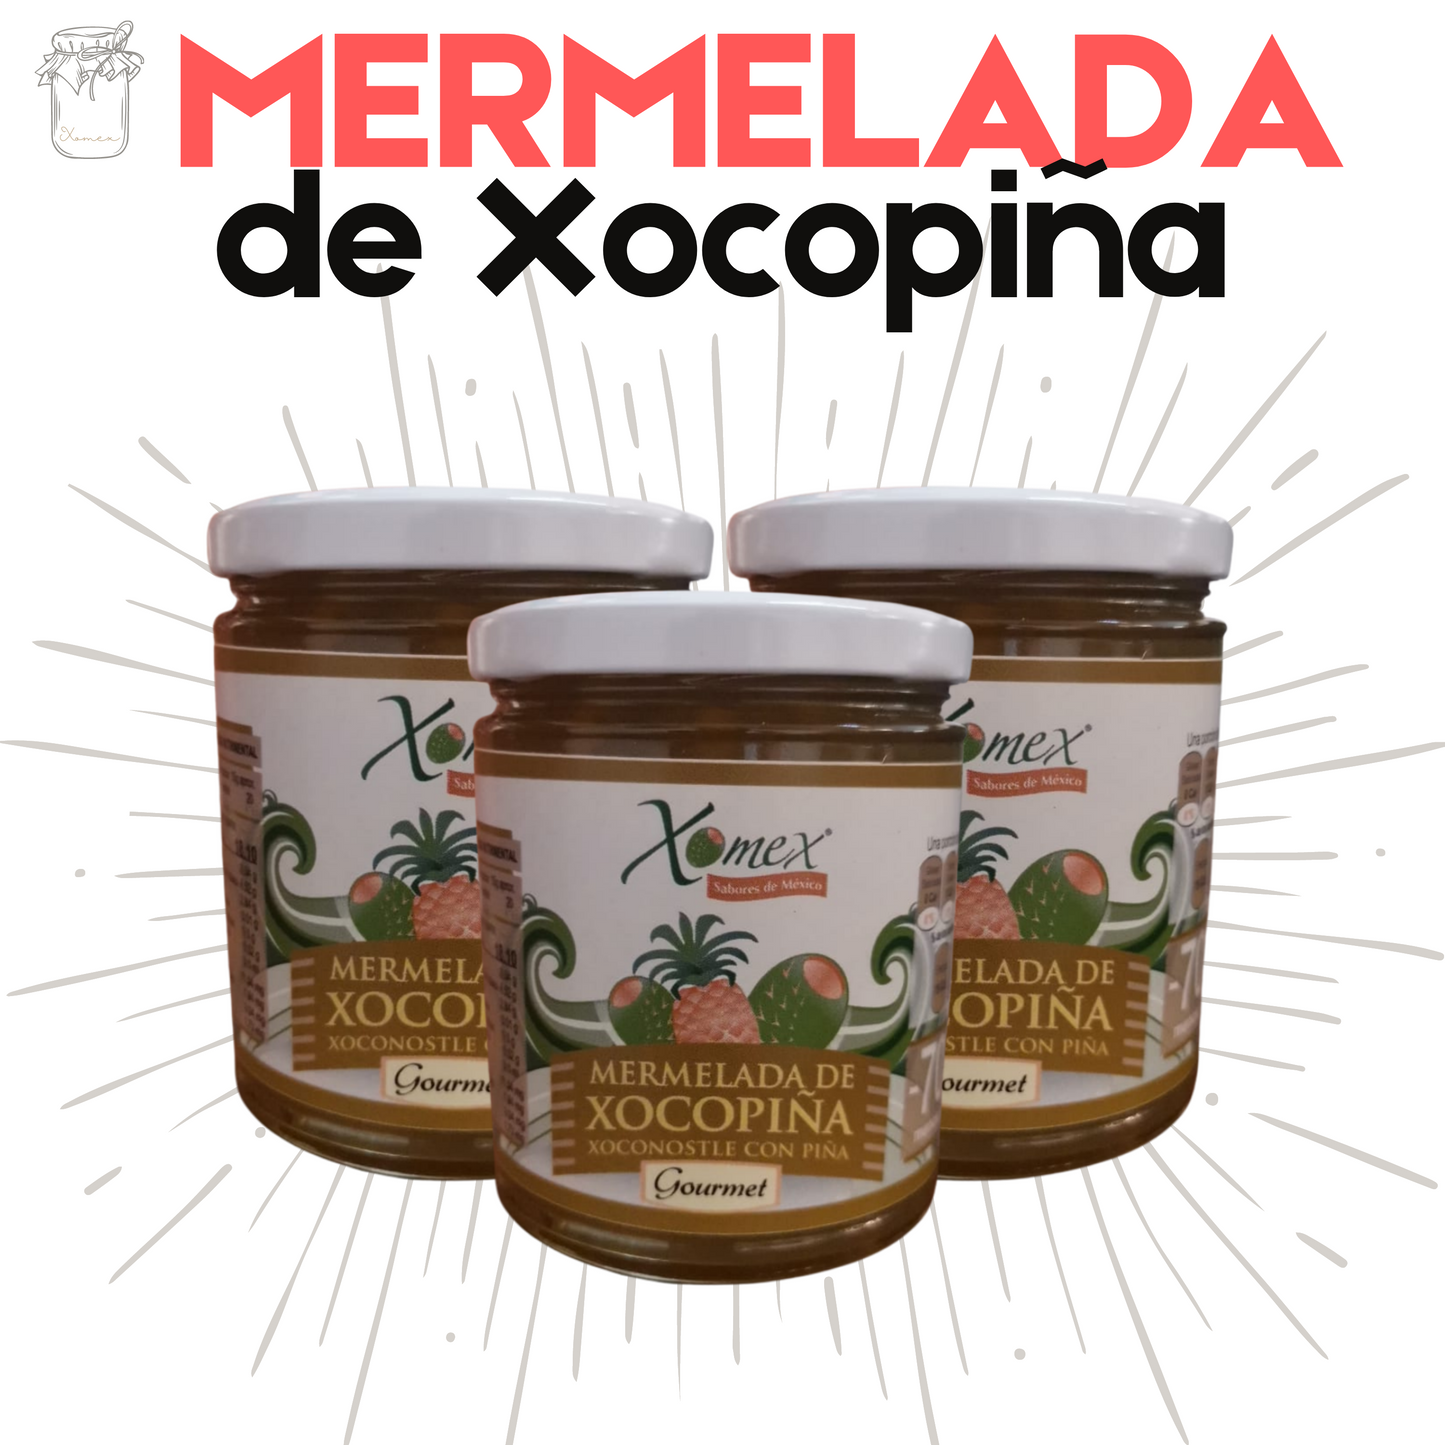 Mermelada de Xocopiña | Xoconostle y Piña | 100% natural | 900g | Mexpofood